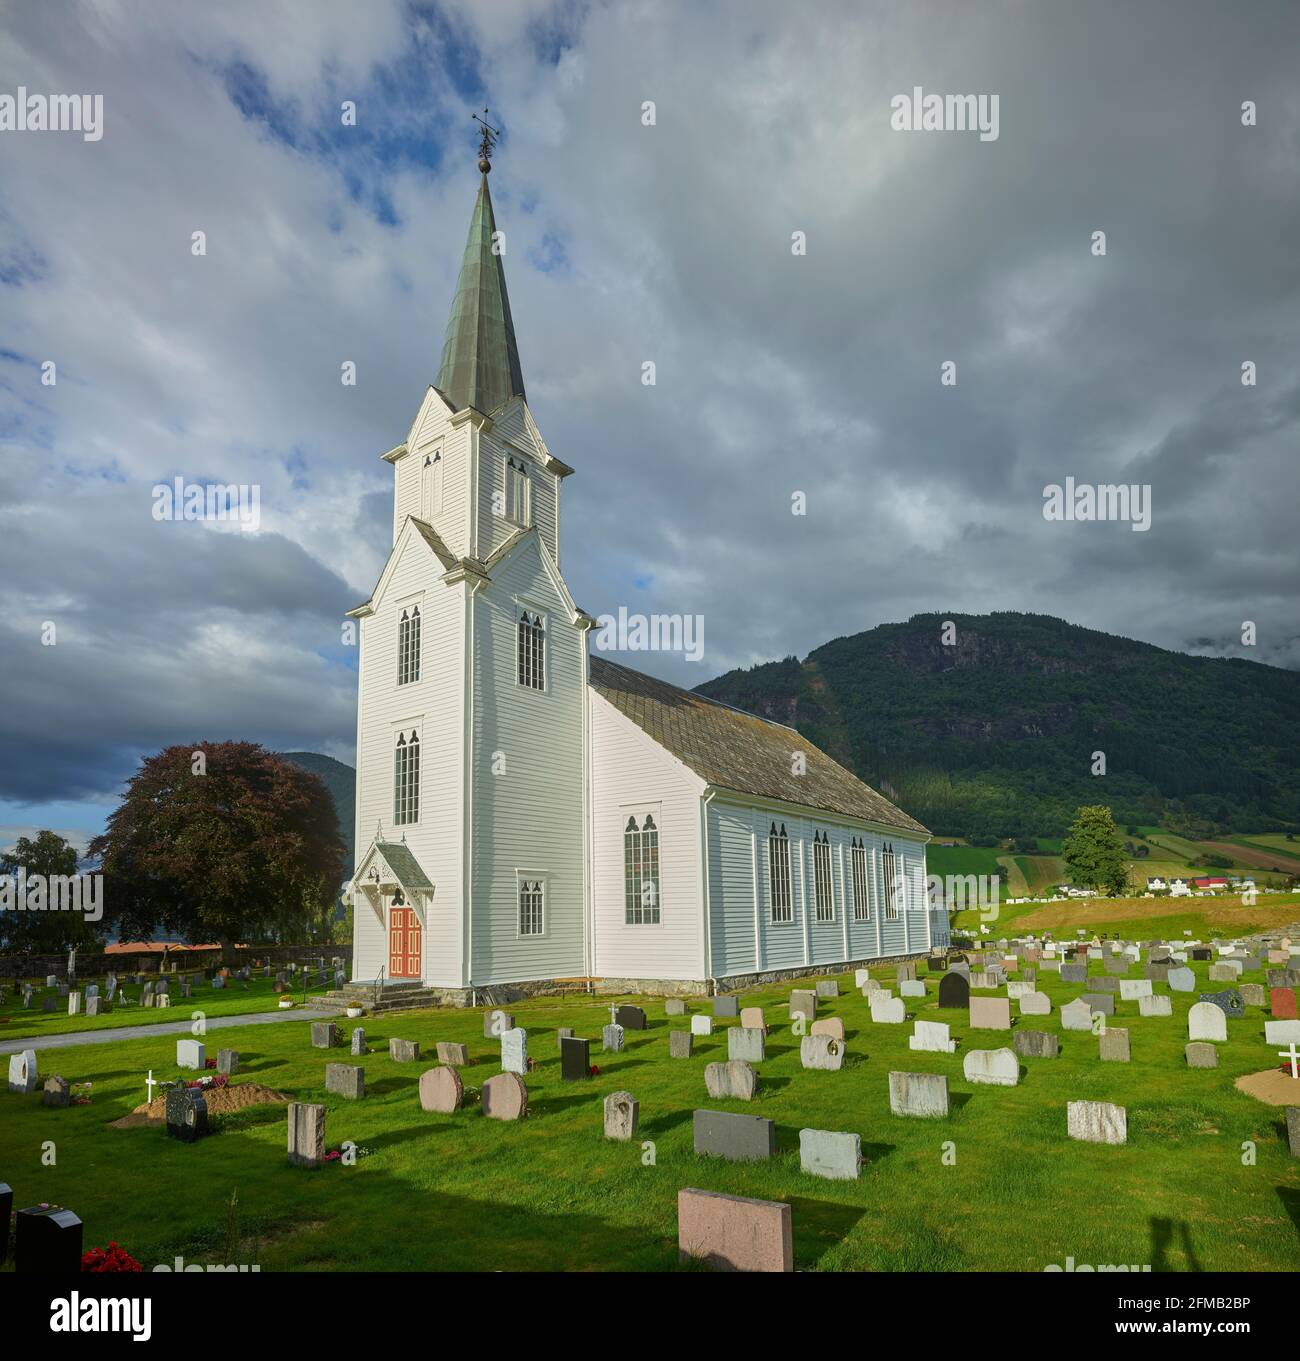 Vikoyri, Vik Church, Vestland, Norway Stock Photo